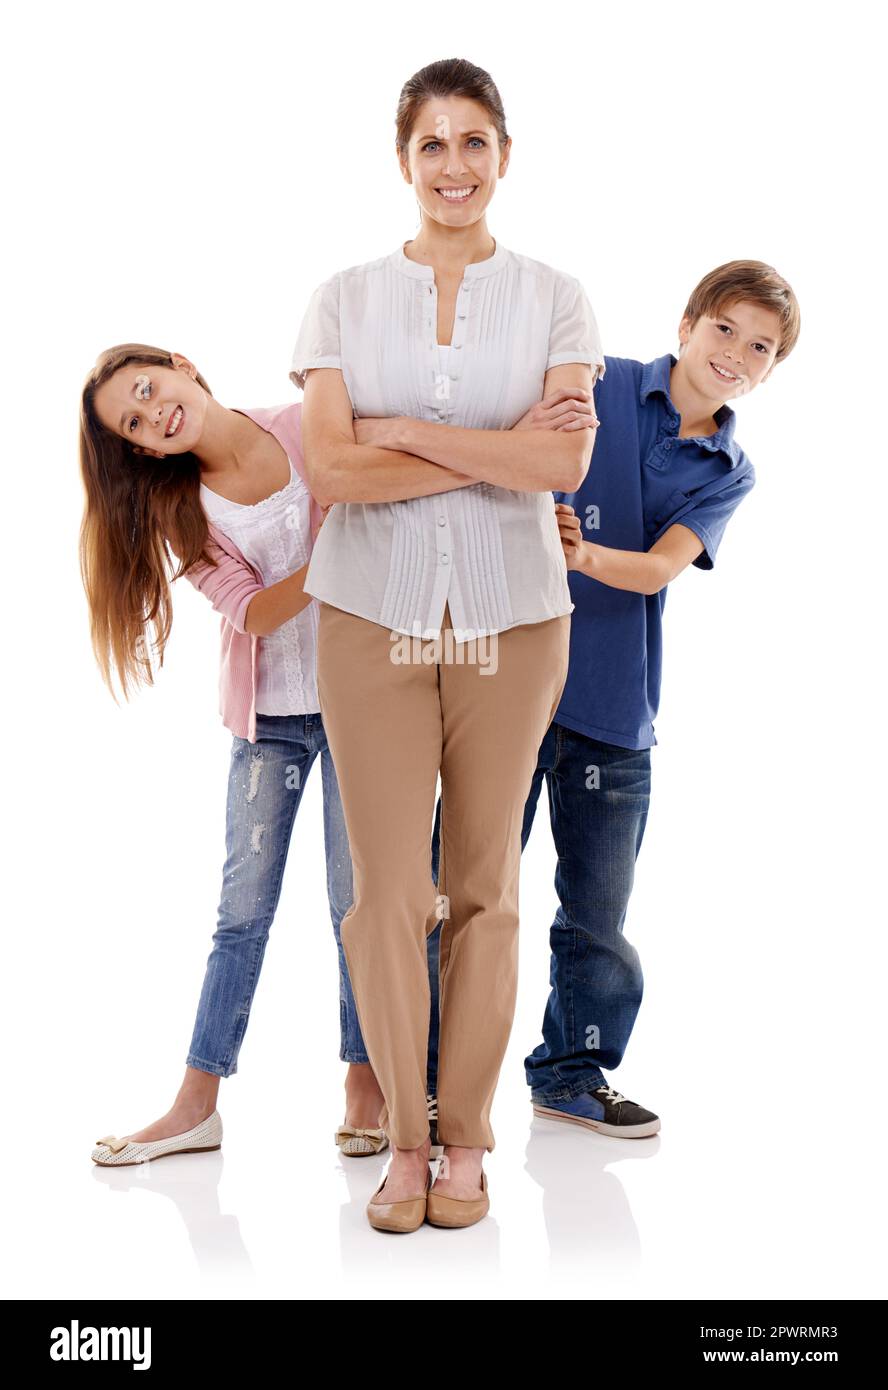 Regel Nummer 1: Respektiere deine Mutter. Das Porträt einer glücklichen Mutter, die mit ihren beiden Kindern neben ihr steht. Stockfoto